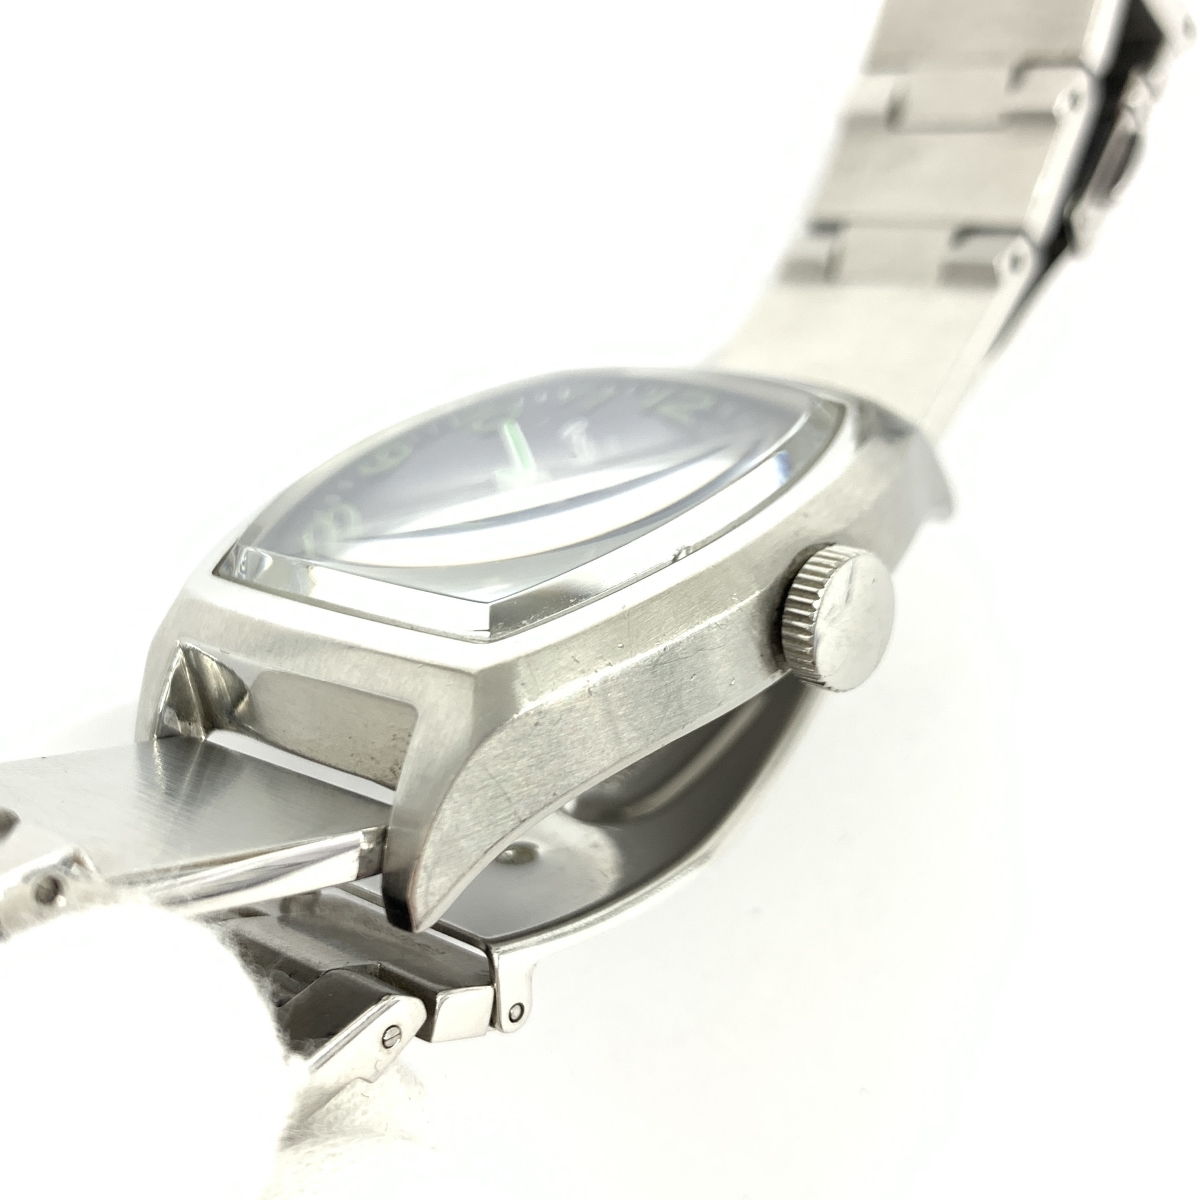 ◆Paul Smith collection ポールスミス コレクション 腕時計 クオーツ◆ シルバーカラー/ブルー メンズ ウォッチ watch_画像7